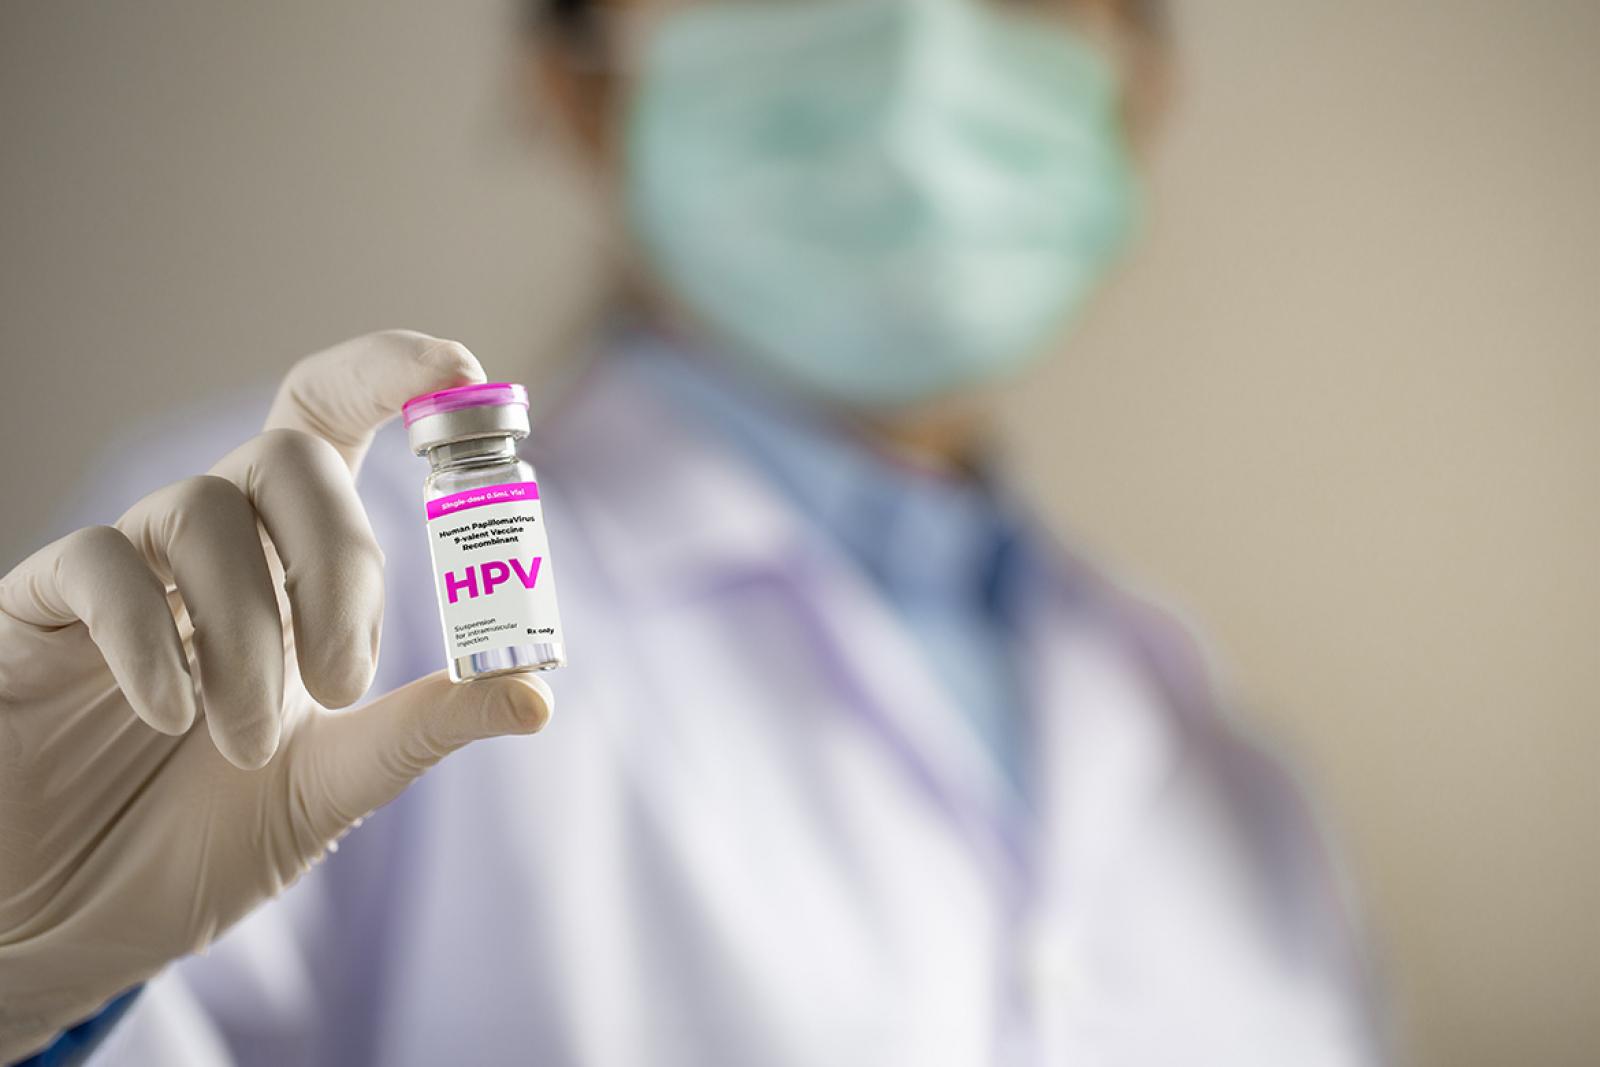 Brasil muda esquema de vacinação contra o HPV e passa a oferecer dose única para crianças e adolescentes